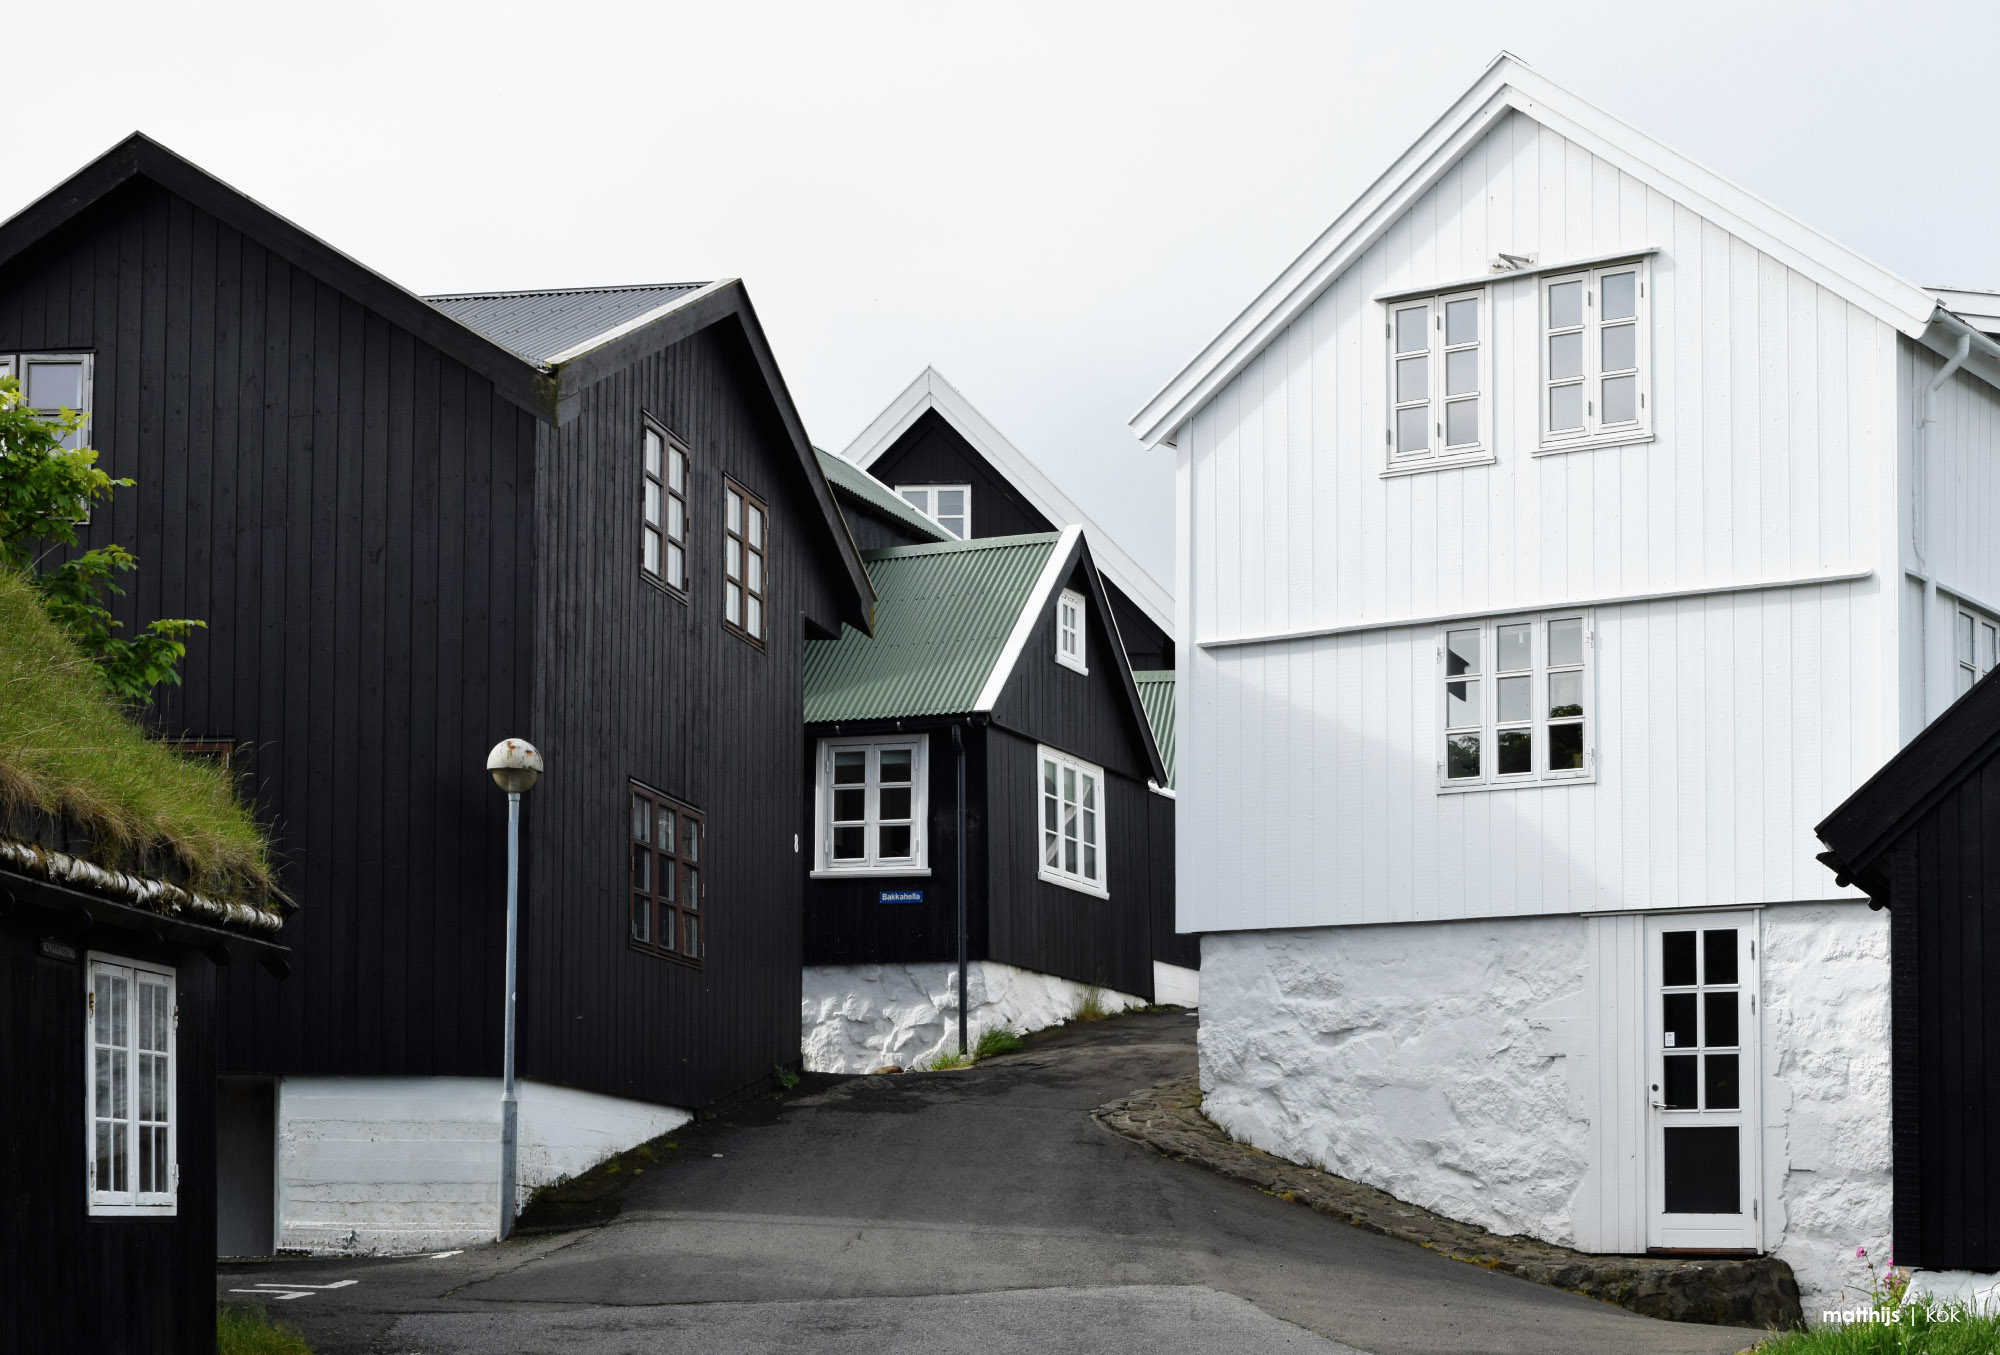 Reyn, Tórshavn, Faroe Islands | Photo by Matthijs Kok